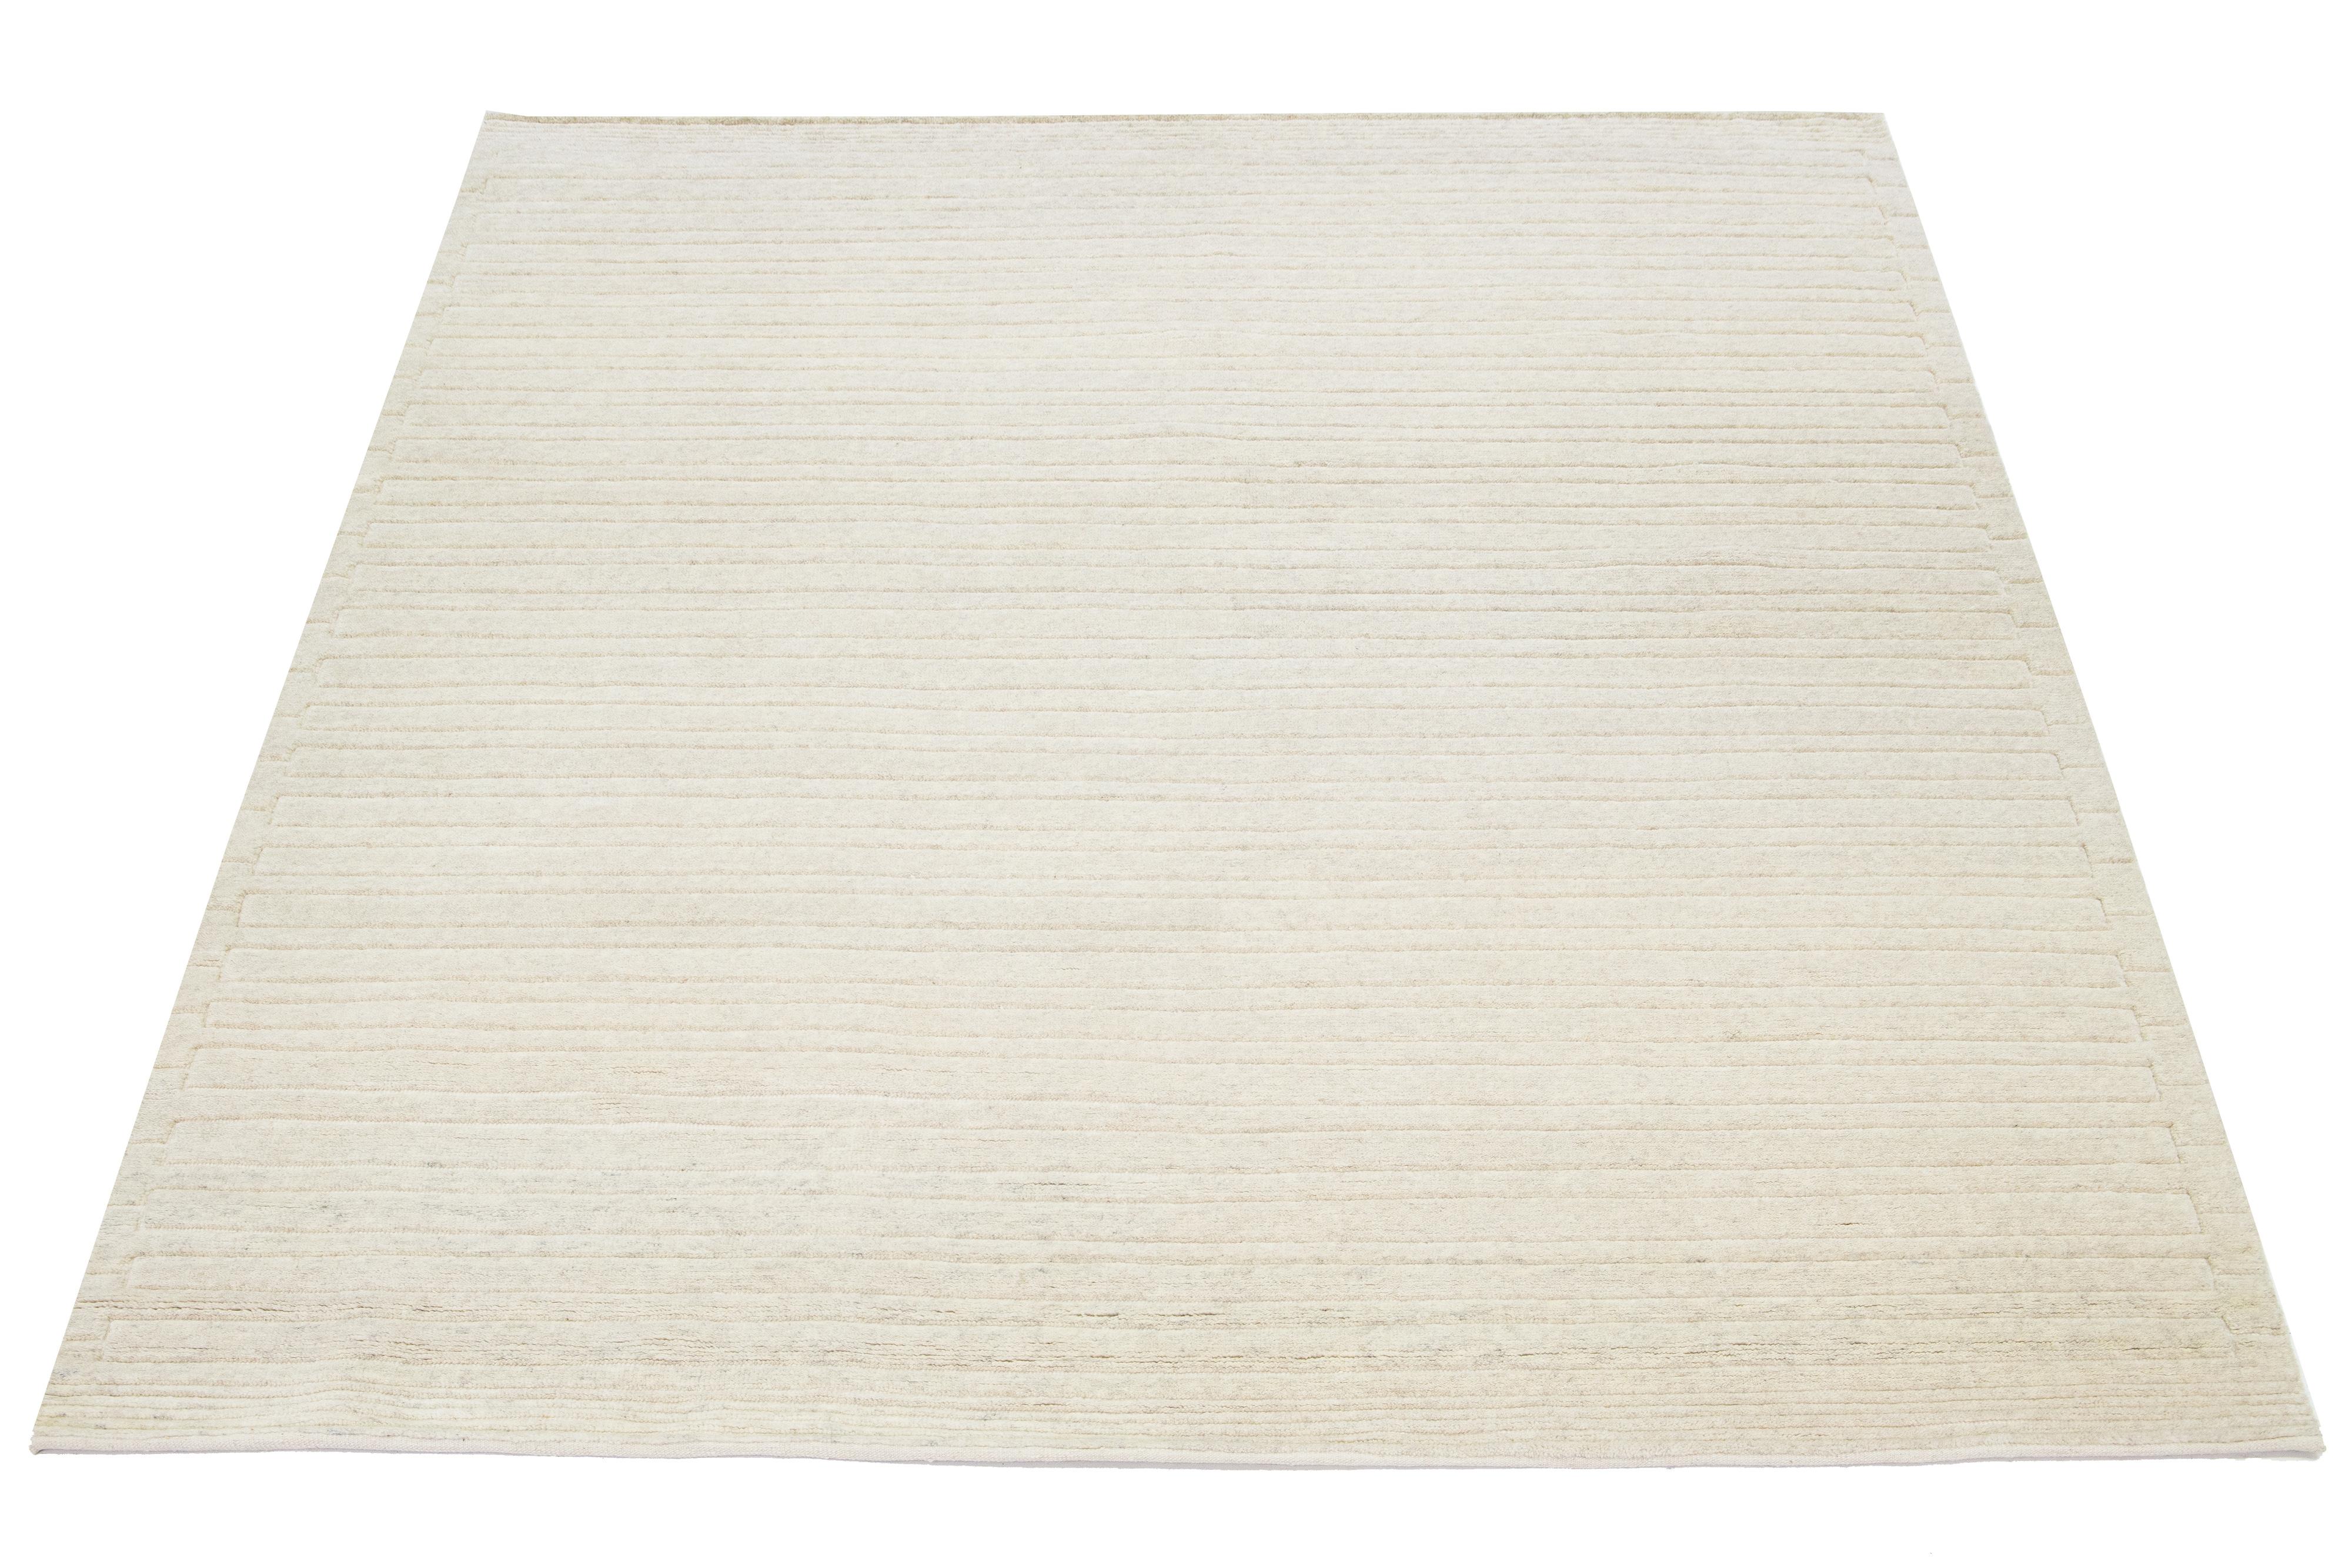 Ce tapis noué à la main, conçu dans un style marocain, est fabriqué en laine et présente une esthétique minimaliste captivante. Il présente des rayures contemporaines sur un fond ivoire aux teintes naturelles.

Ce tapis mesure 8'3